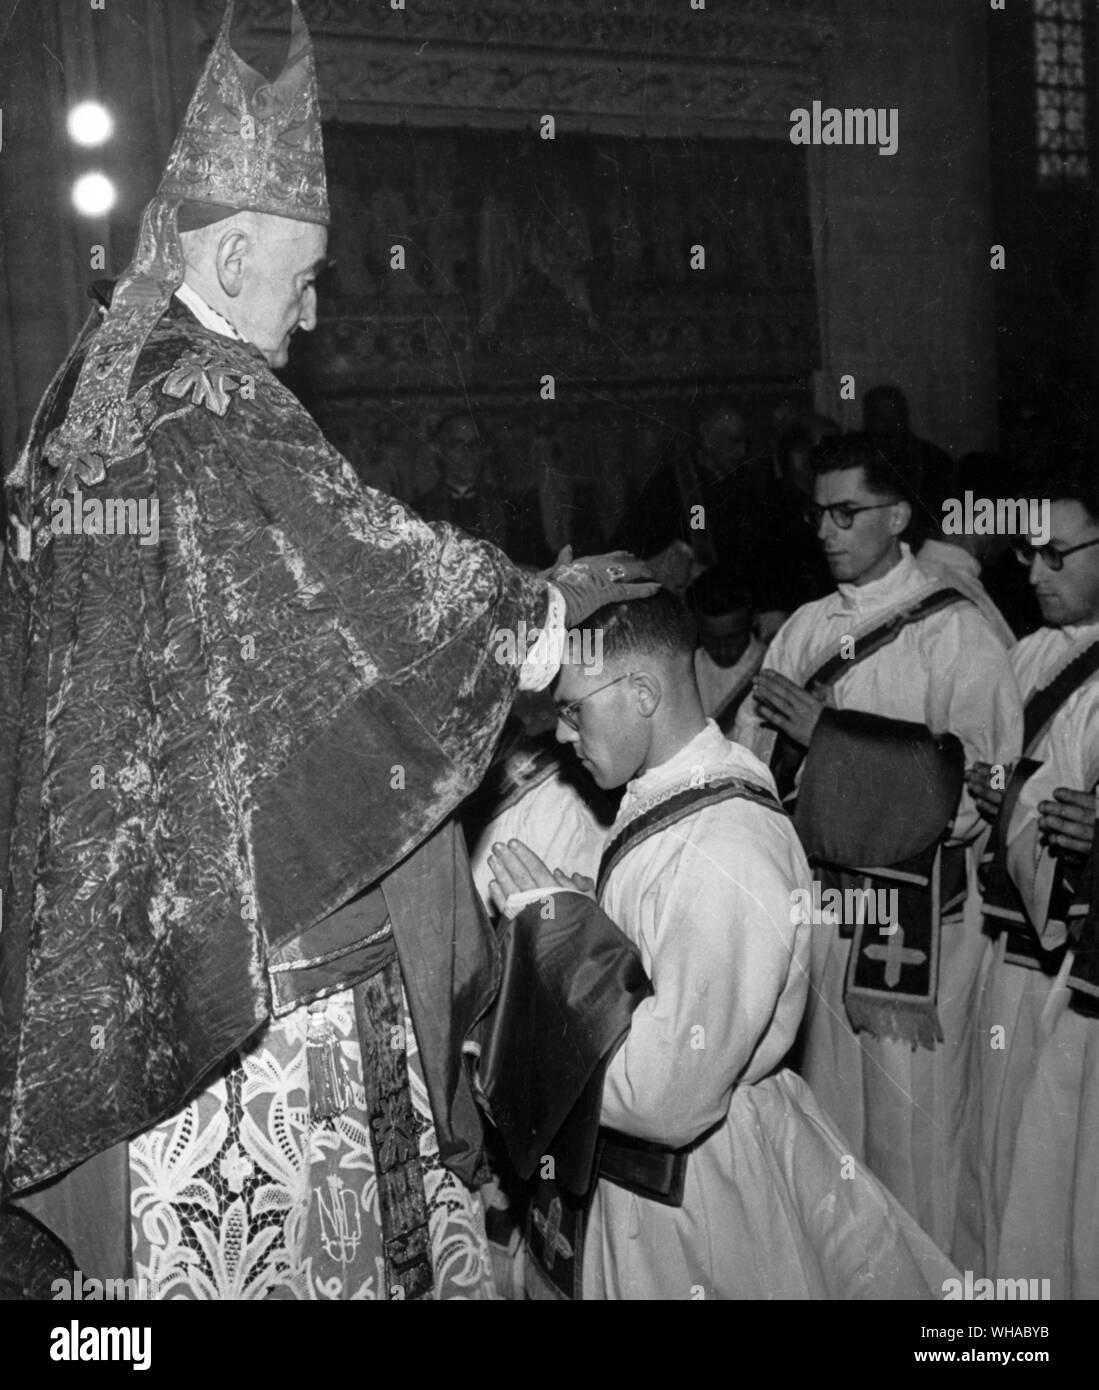 L'ordinazione. Il Vescovo pone le proprie mani sui candidati seguiti da tutti gli altri sacerdoti presenti, quindi li presenta con piviali e annoints le loro mani. Foto Stock